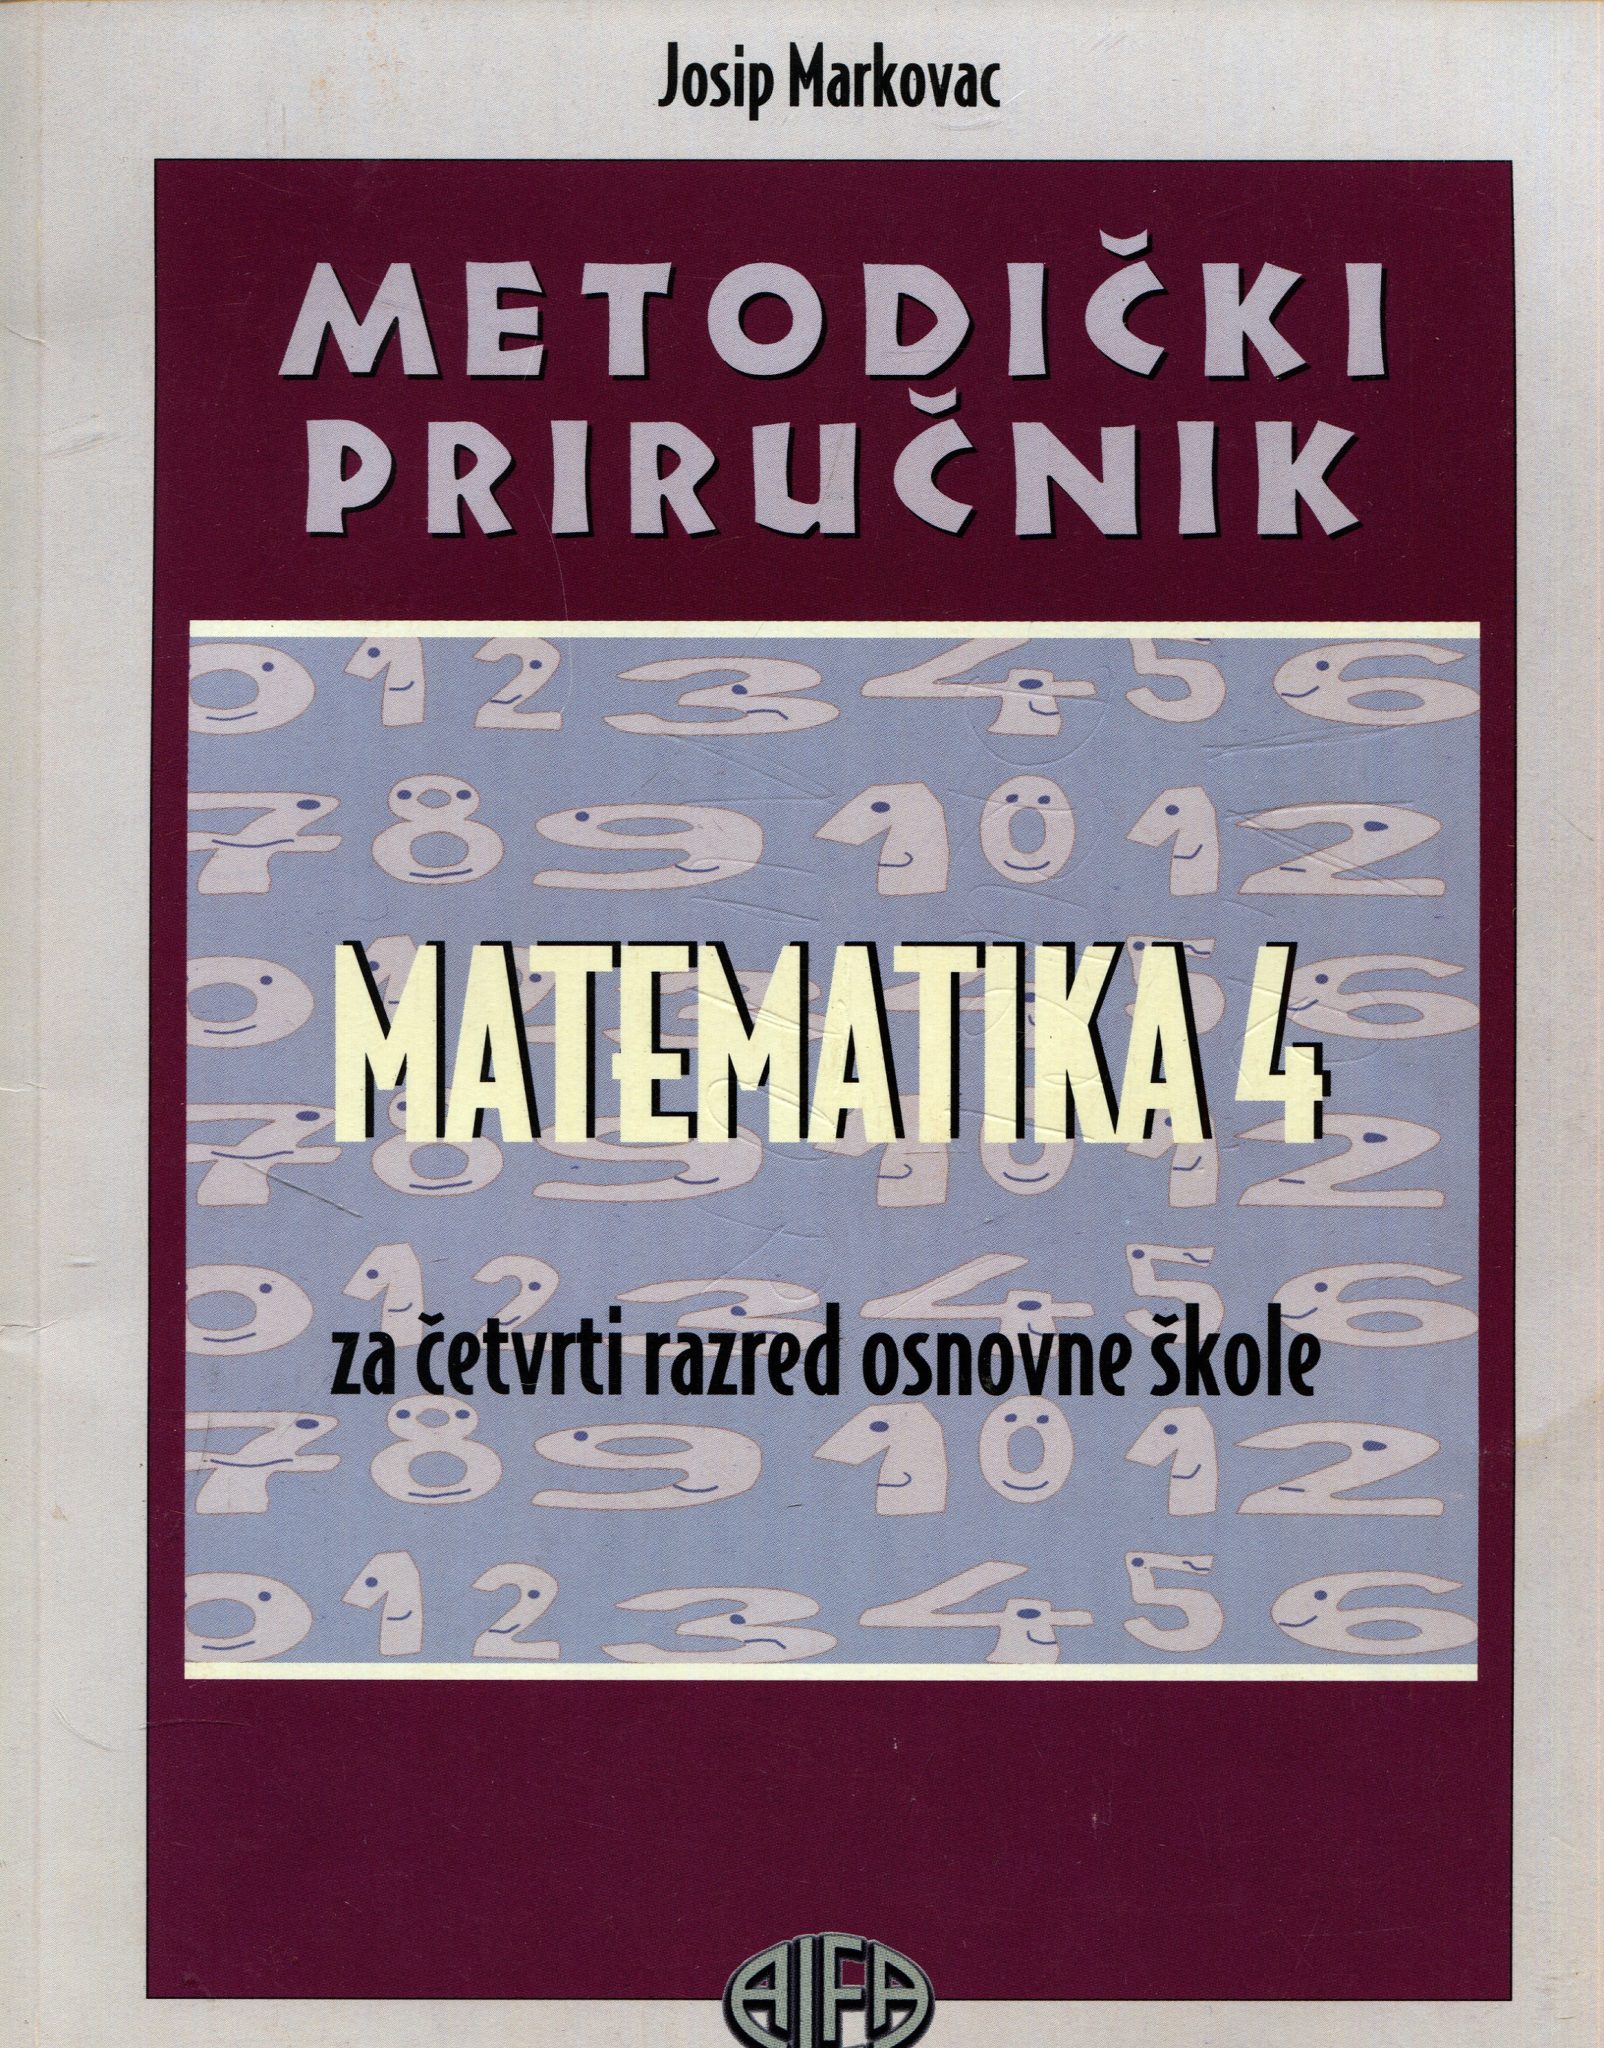 Matematika 4 - metodički priručnik za četvrti razred osnovne škole Josip Markovac